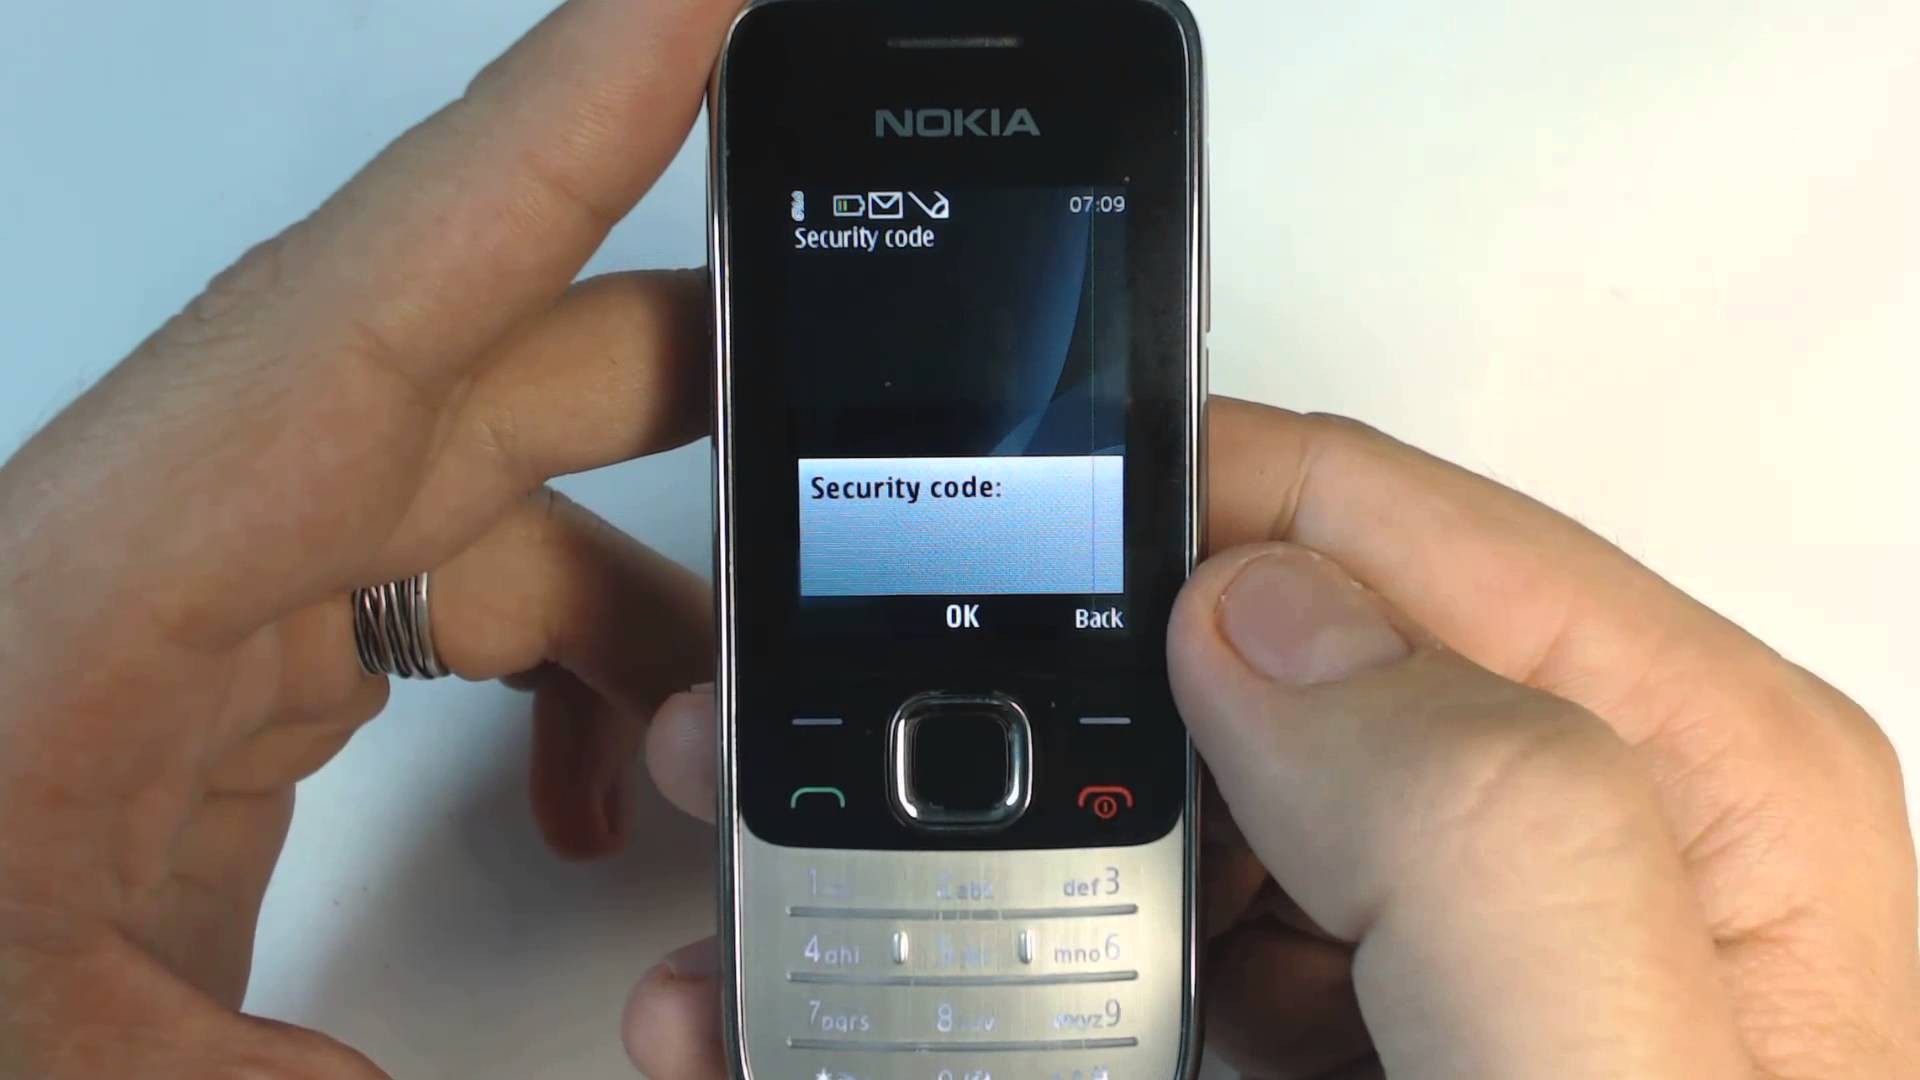 Пин код нокиа. Nokia 2730 Classic. Нокиа кнопочные 2730. Защитный код нокиа кнопочный c2. Nokia 6700.